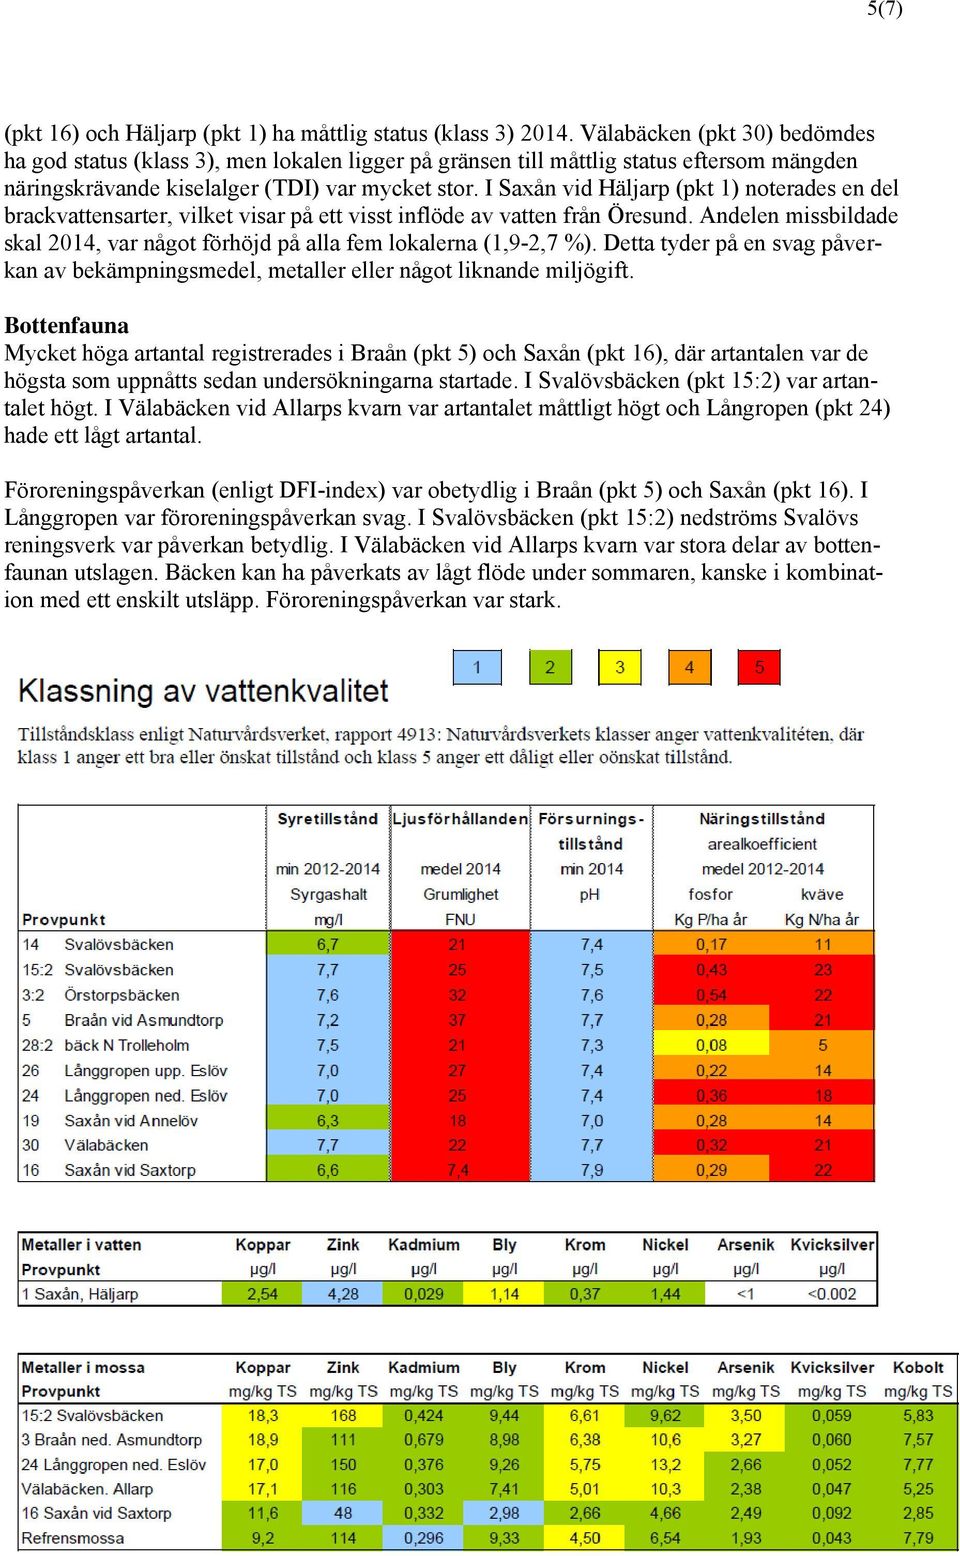 I Saxån vid Häljarp (pkt 1) noterades en del brackvattensarter, vilket visar på ett visst inflöde av vatten från Öresund.